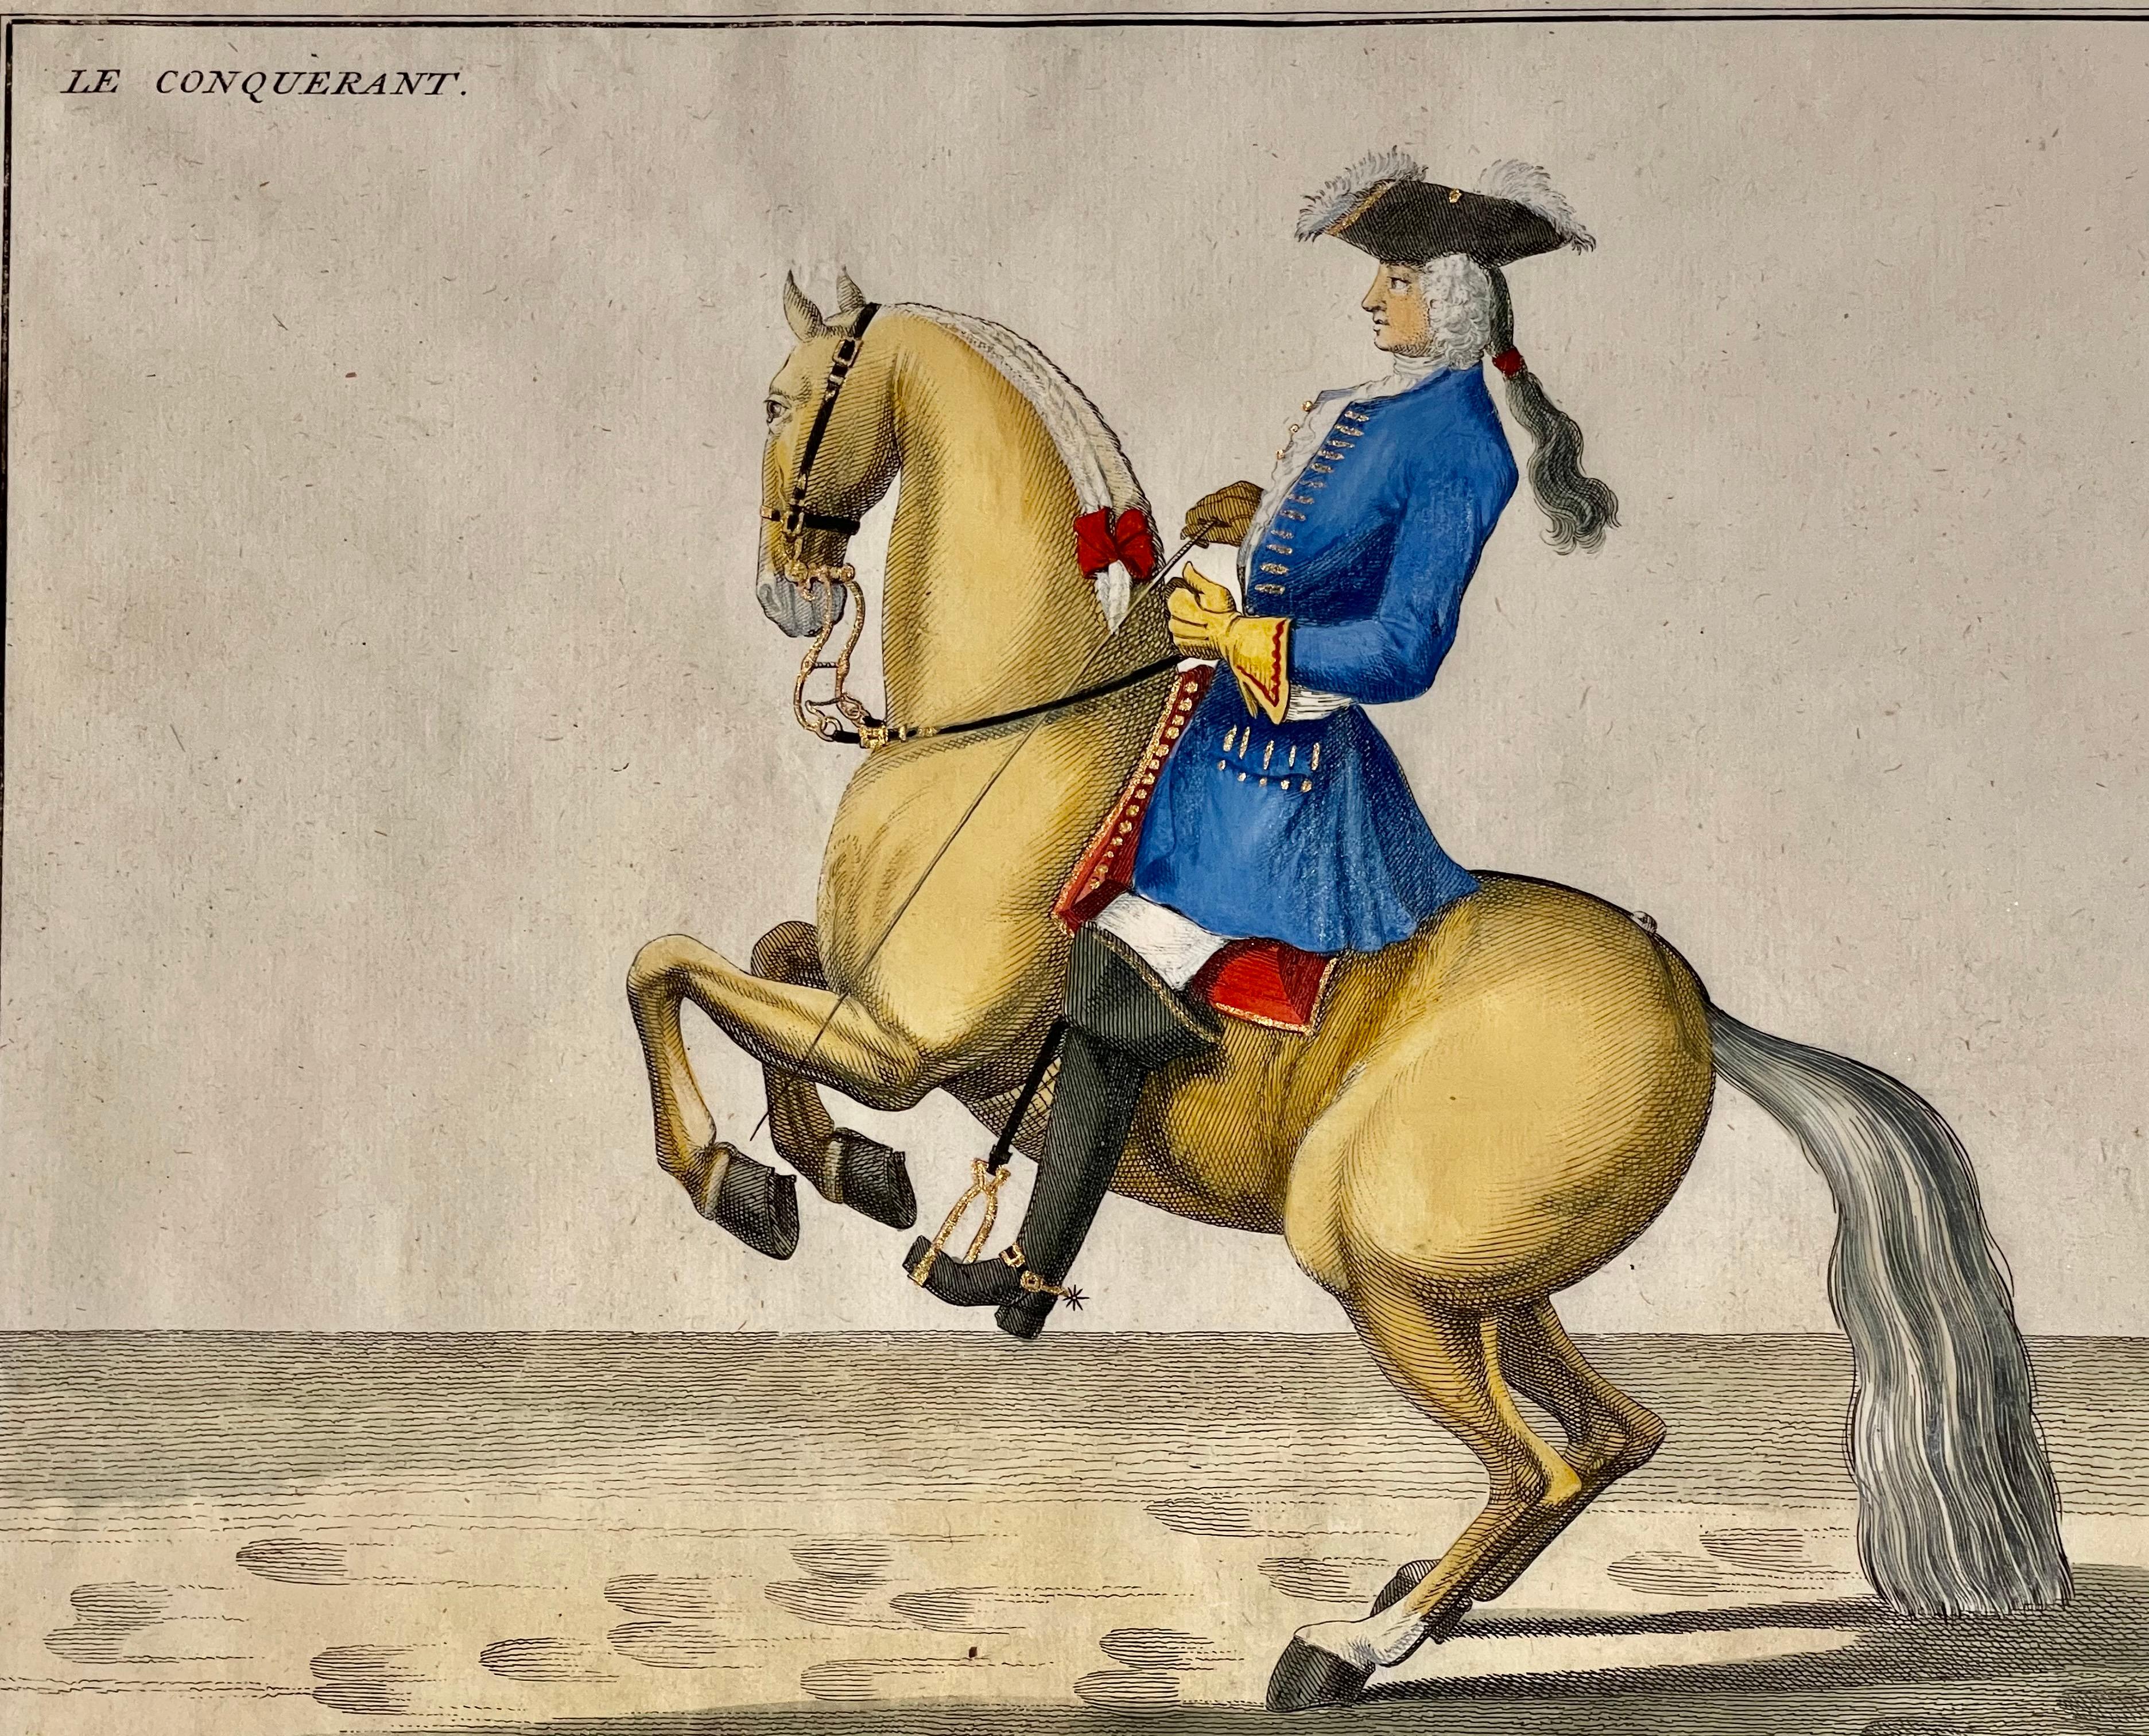 Paper Four Engravings of Horse Riders Le Sensible, Le Royal, Le Conquerant, Le Ballon